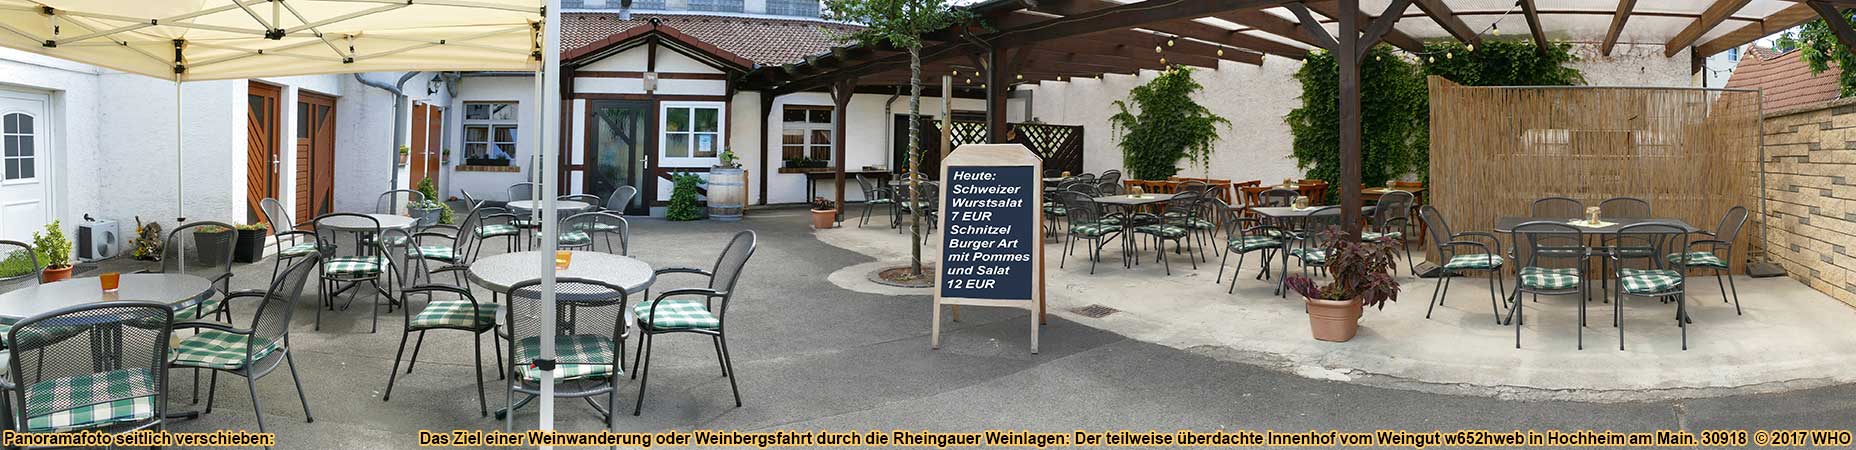 Das Ziel einer Weinwanderung oder Weinbergsfahrt durch die Rheingauer Weinlagen: Der teilweise berdachte Innenhof vom Weingut w652hweb in Hochheim am Main.